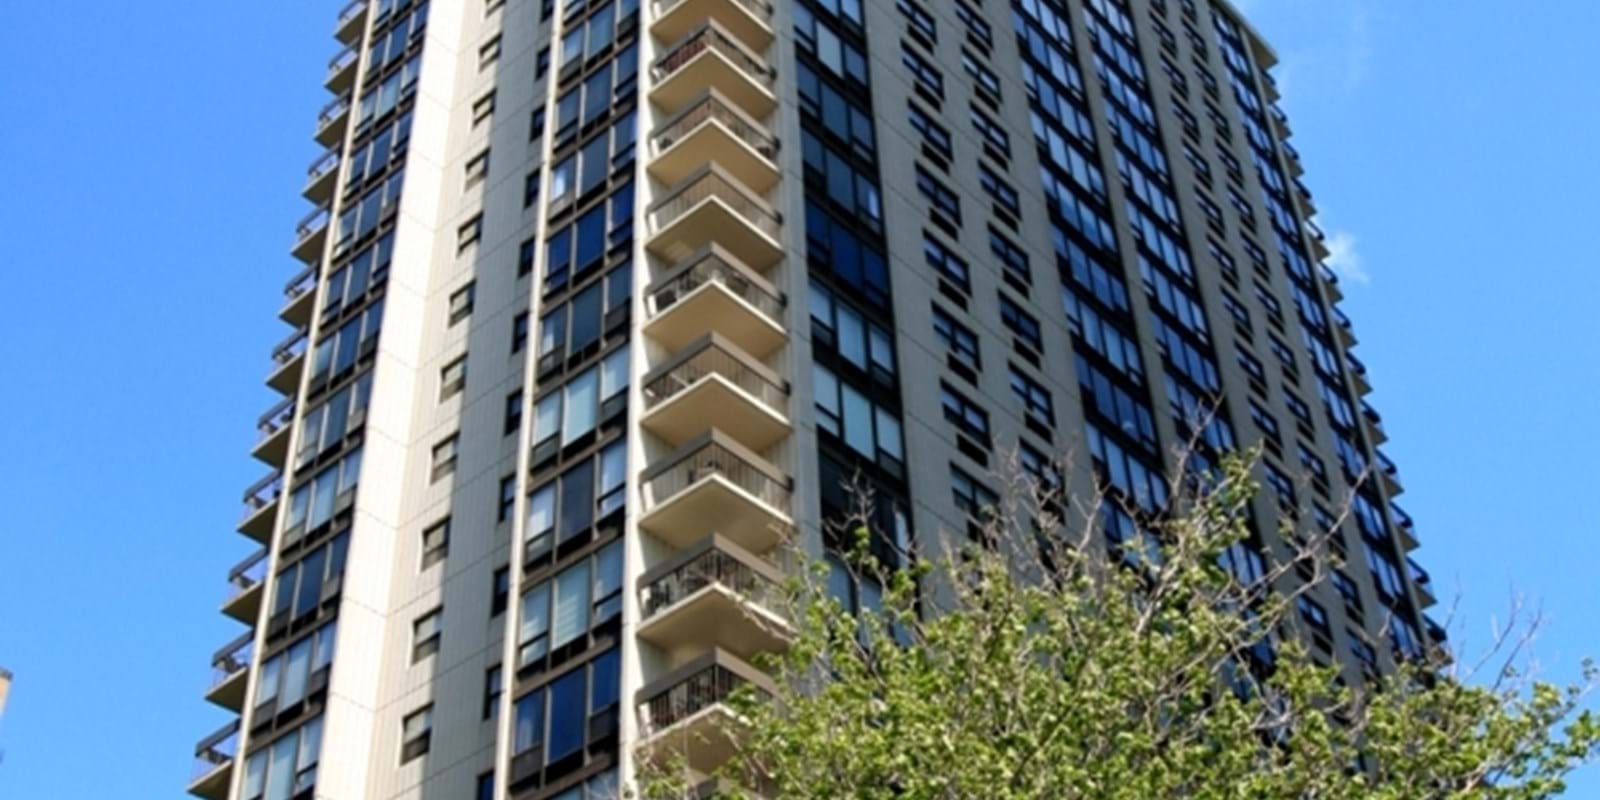 Statistiques de ventes résidentielles Centris® - août 2017 - Mené par la copropriété, le marché immobilier résidentiel montréalais poursuit